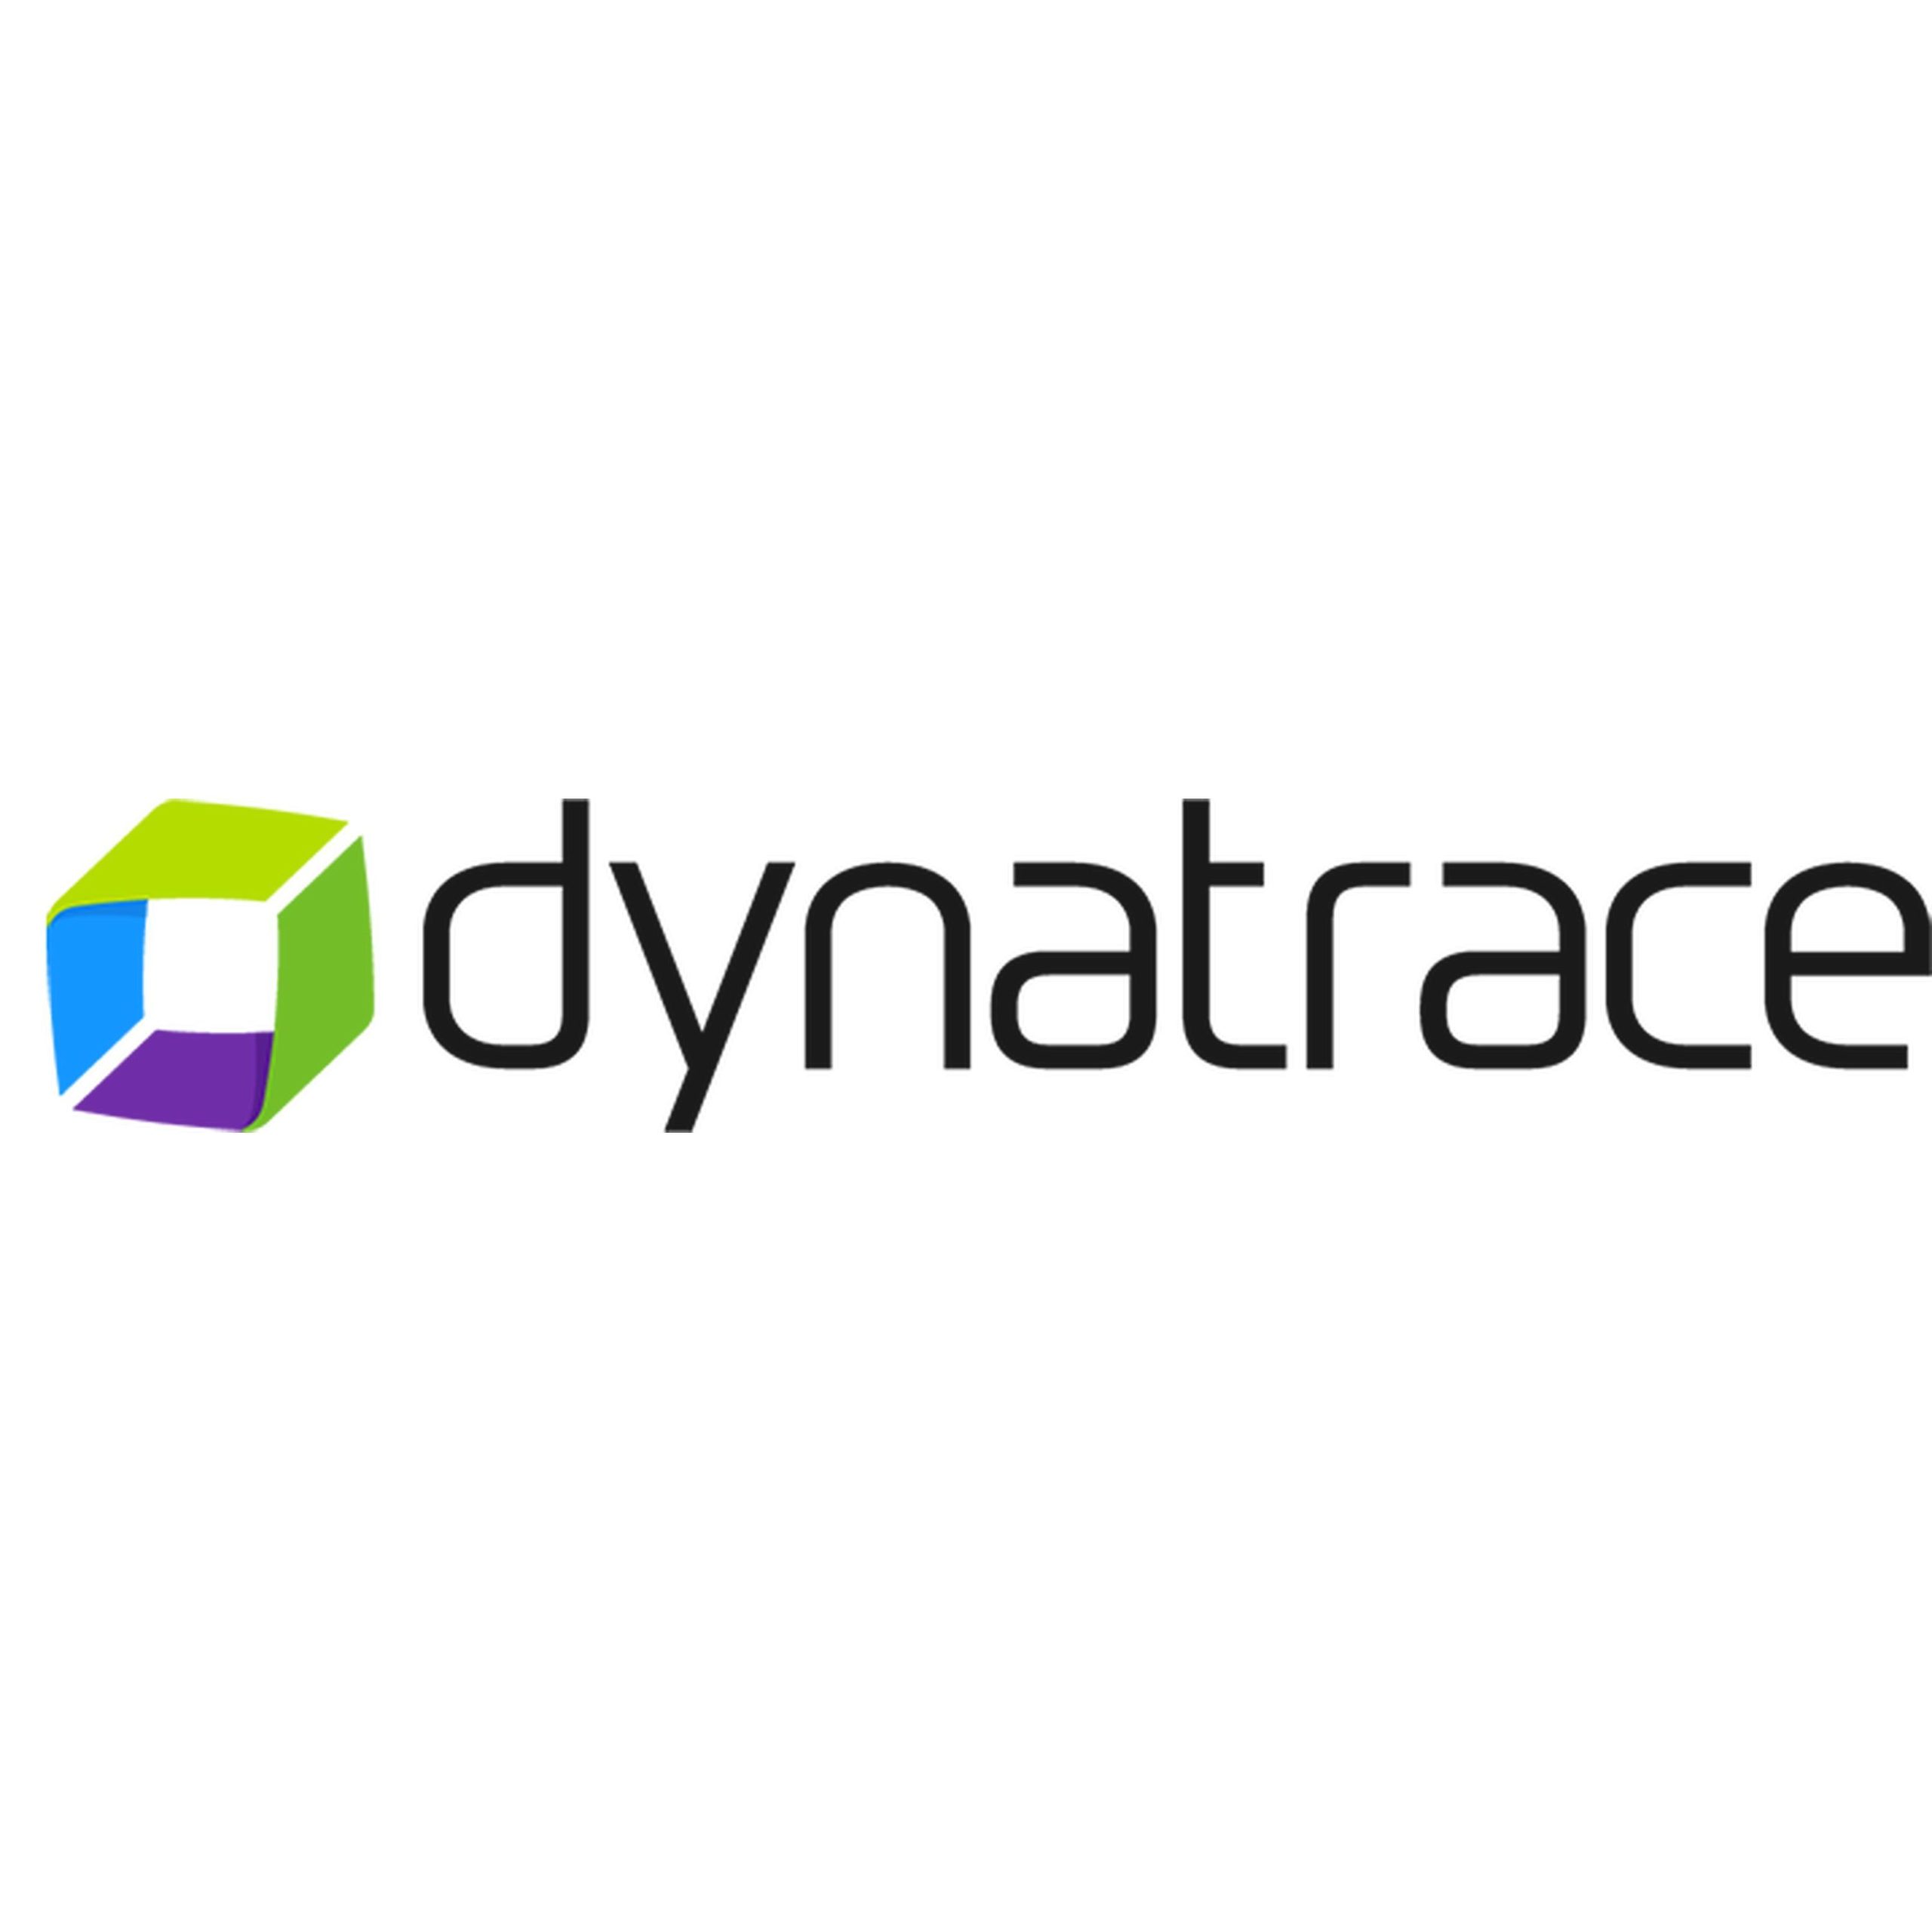 デジタルビジネスパフォーマンス管理ソフトウエア Dynatrace